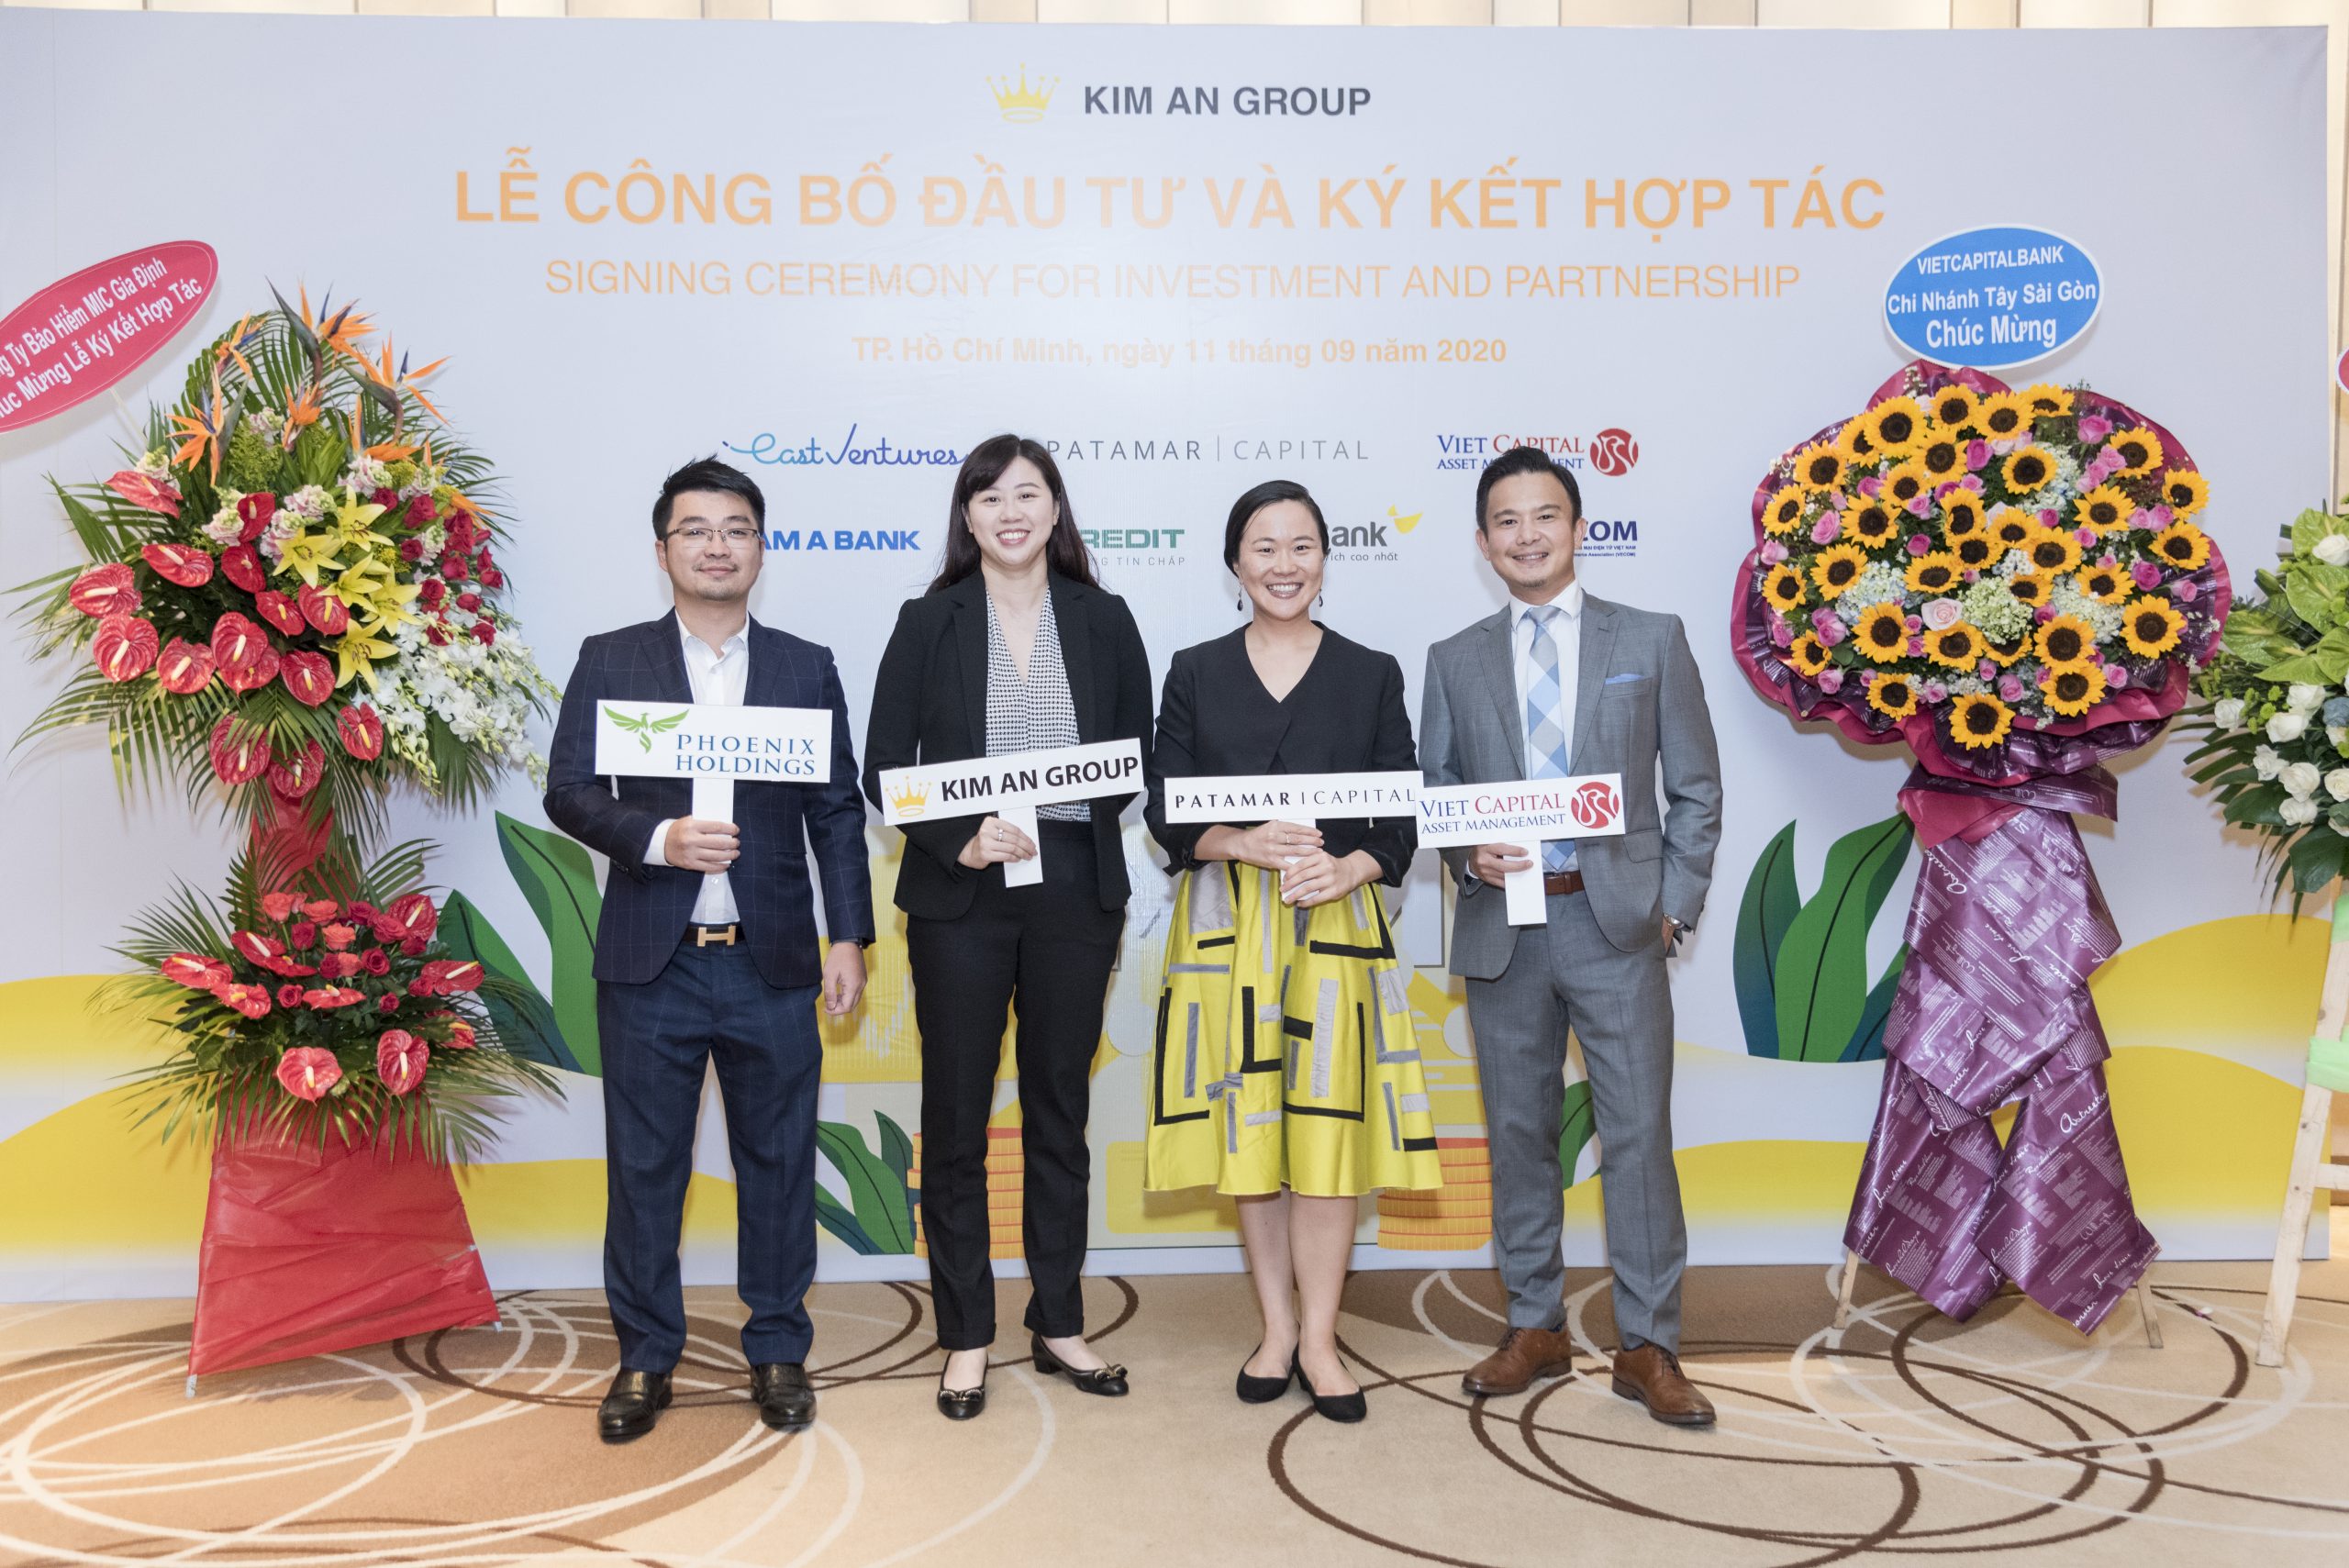 Vietnamese fintech firm Kim An Group closes Series A funding round